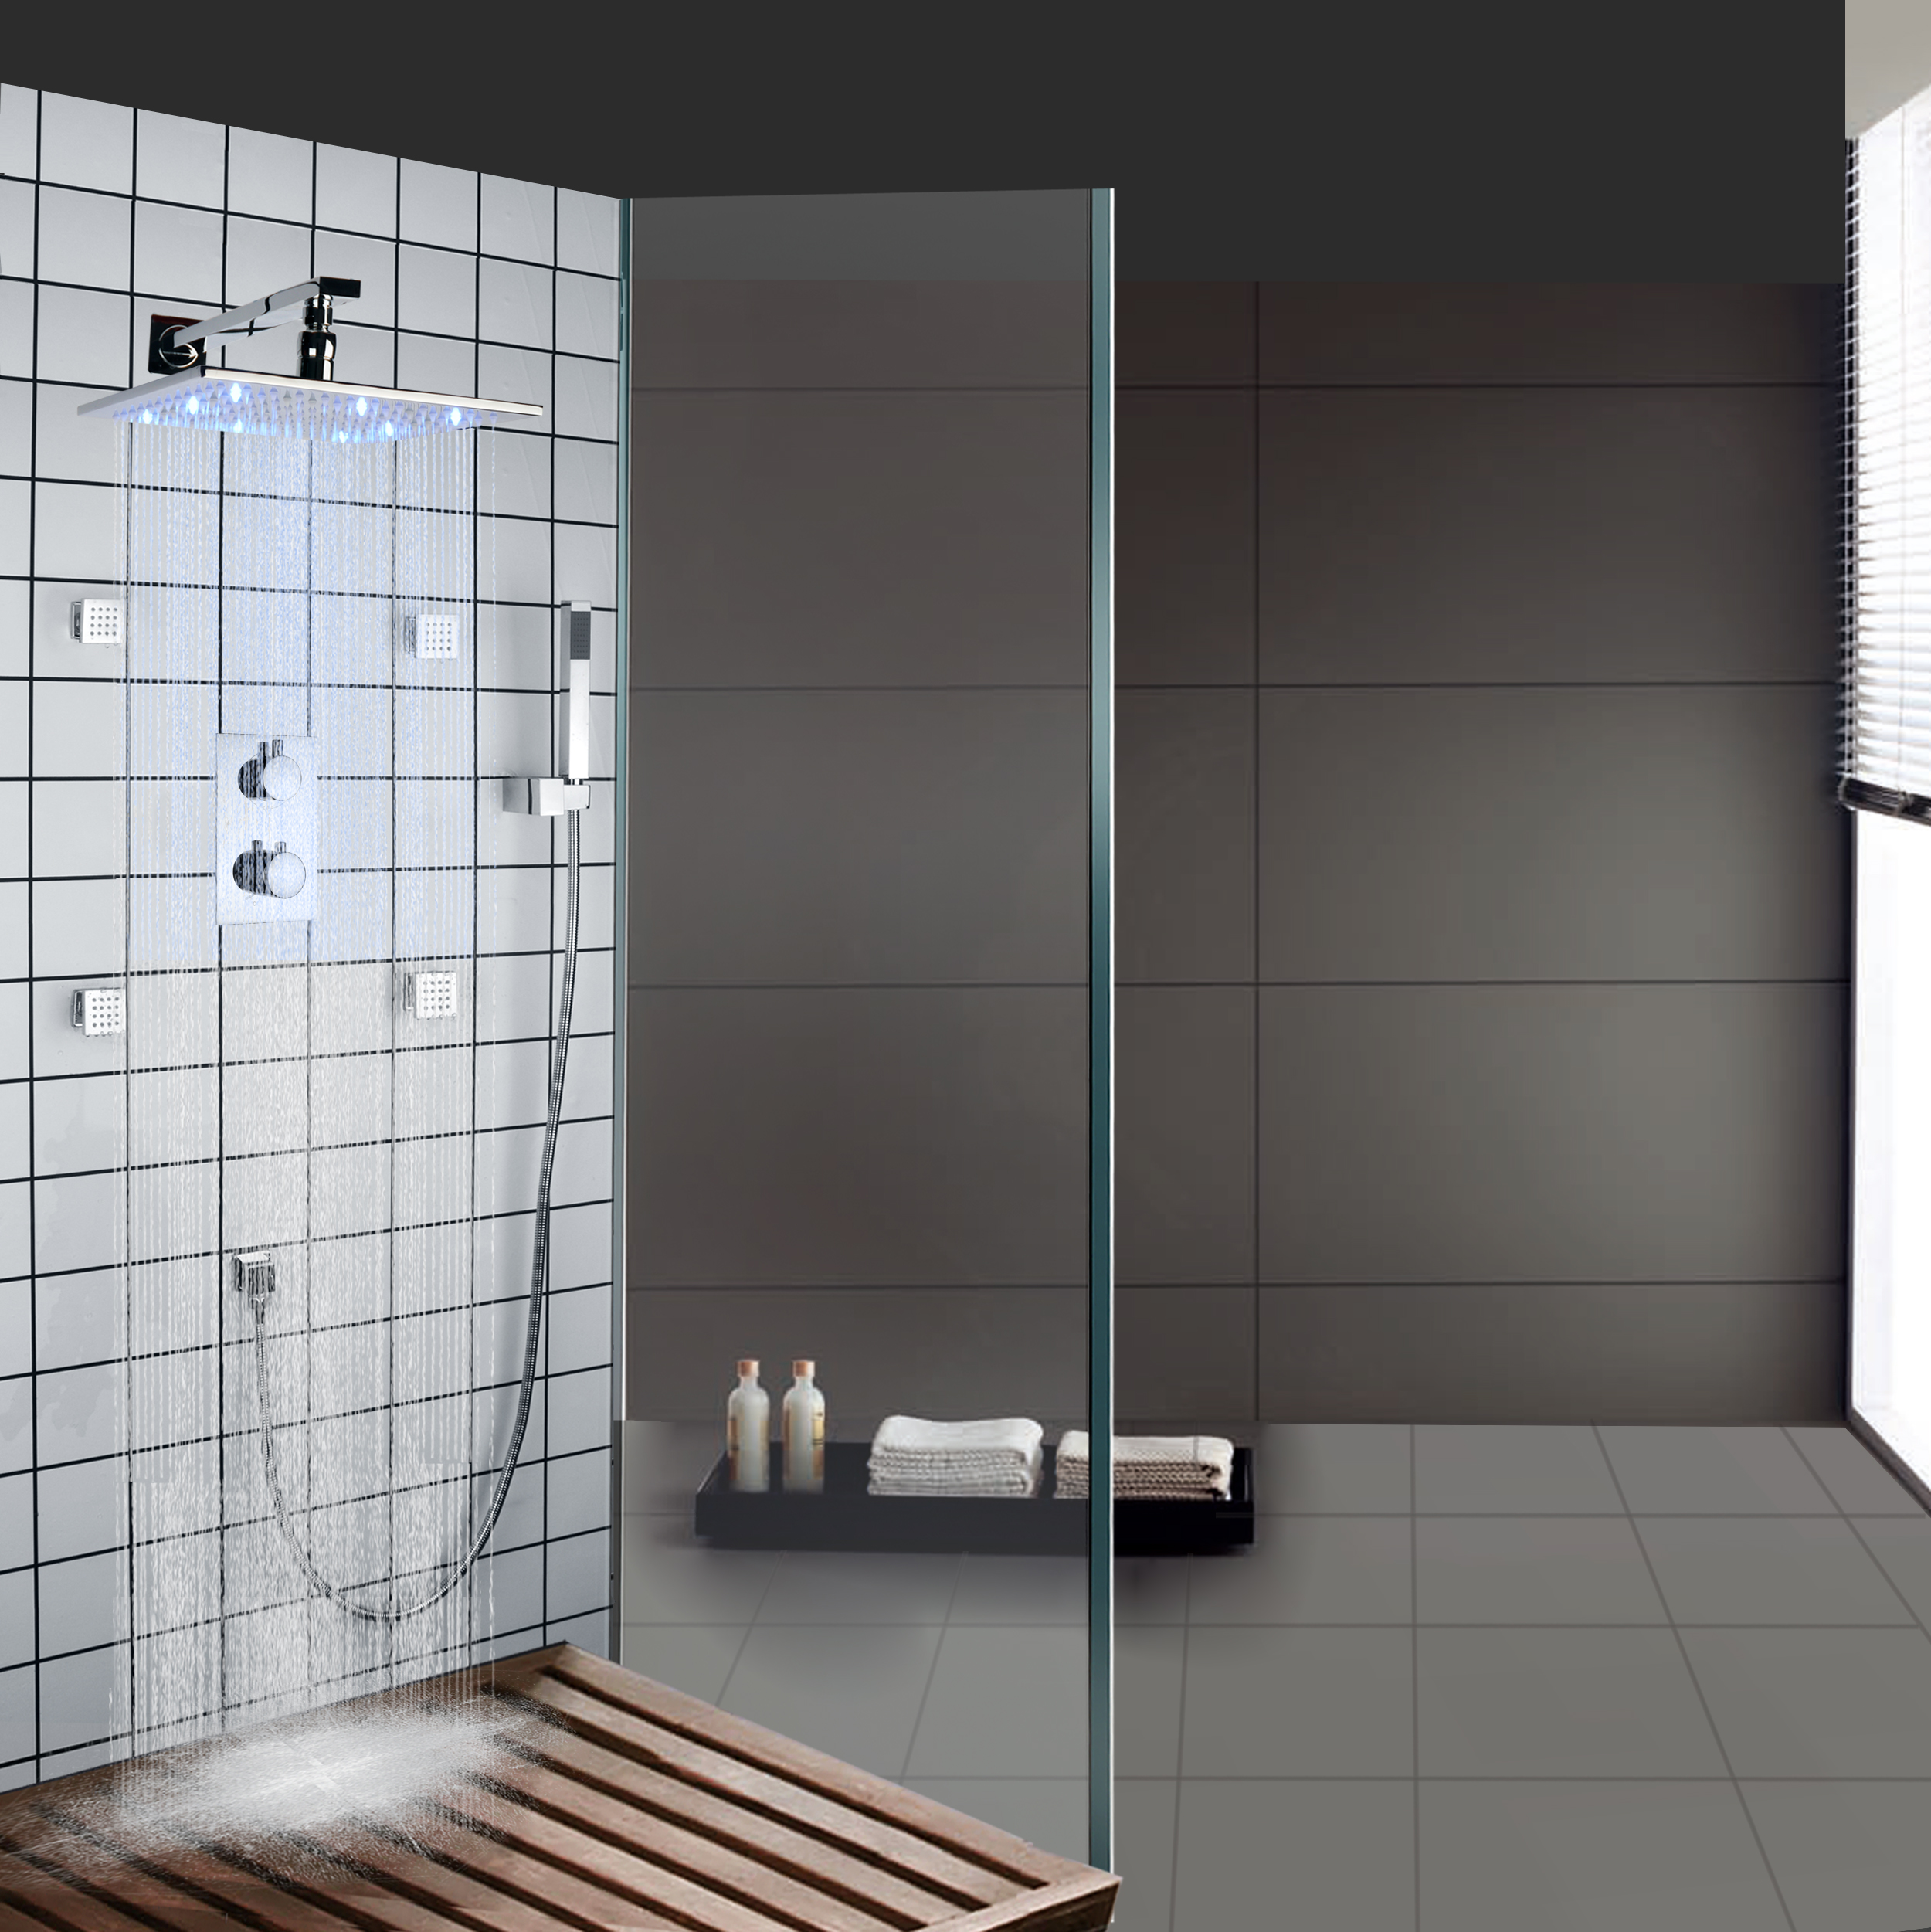 Sistema pulido cromo de las precipitaciones del panel del sistema de la ducha de los muebles del cuarto de baño de PDA de las bocas